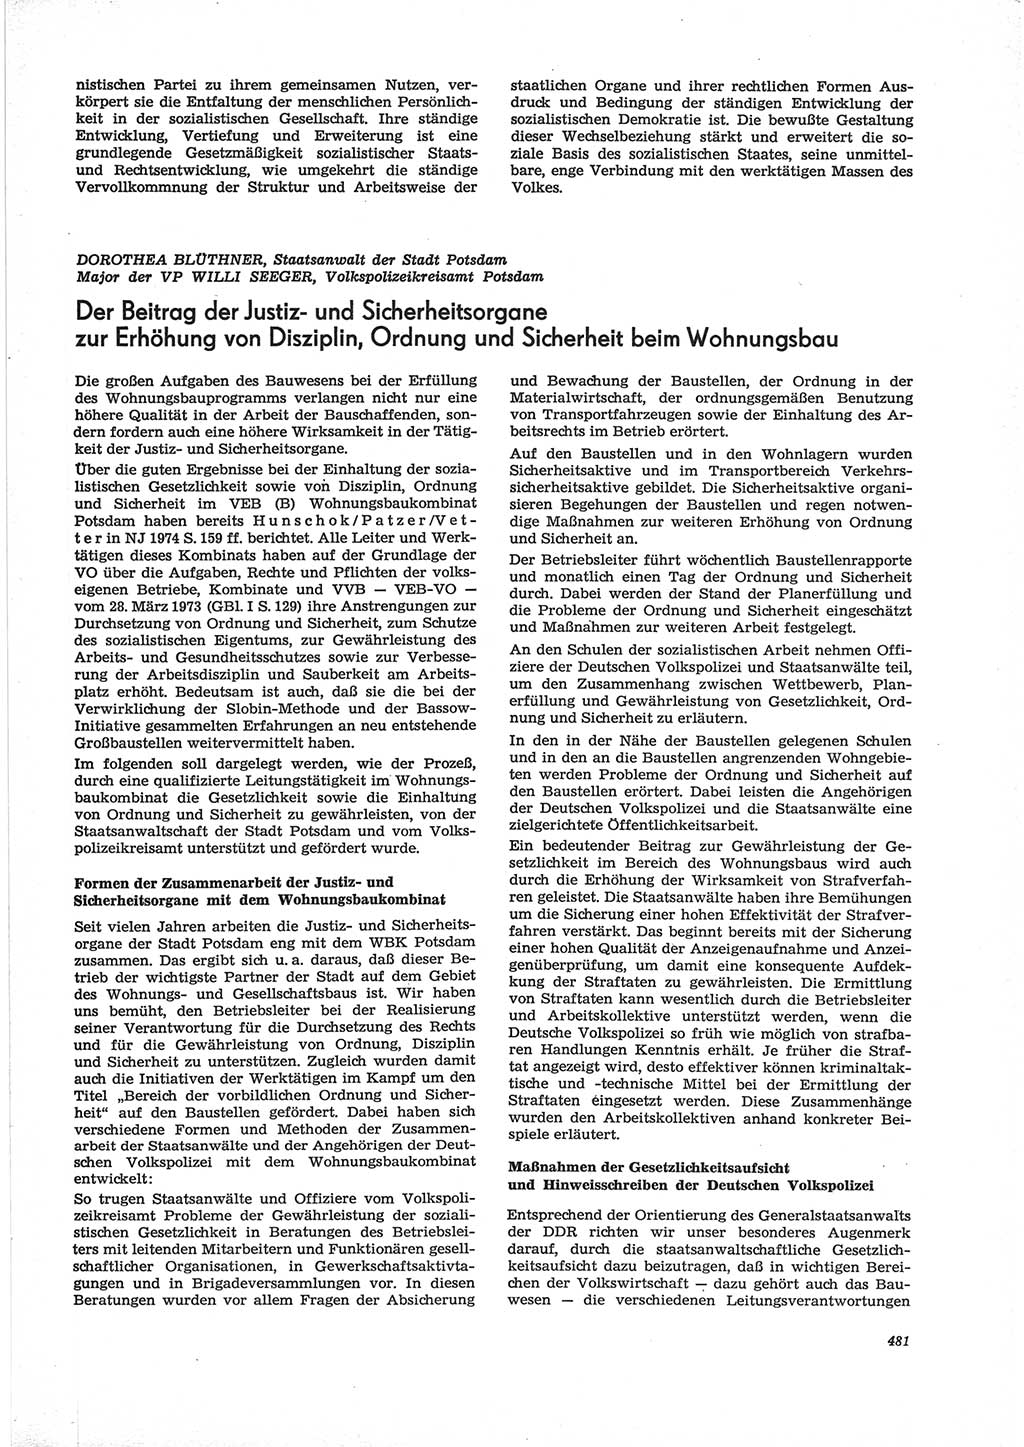 Neue Justiz (NJ), Zeitschrift für Recht und Rechtswissenschaft [Deutsche Demokratische Republik (DDR)], 28. Jahrgang 1974, Seite 481 (NJ DDR 1974, S. 481)